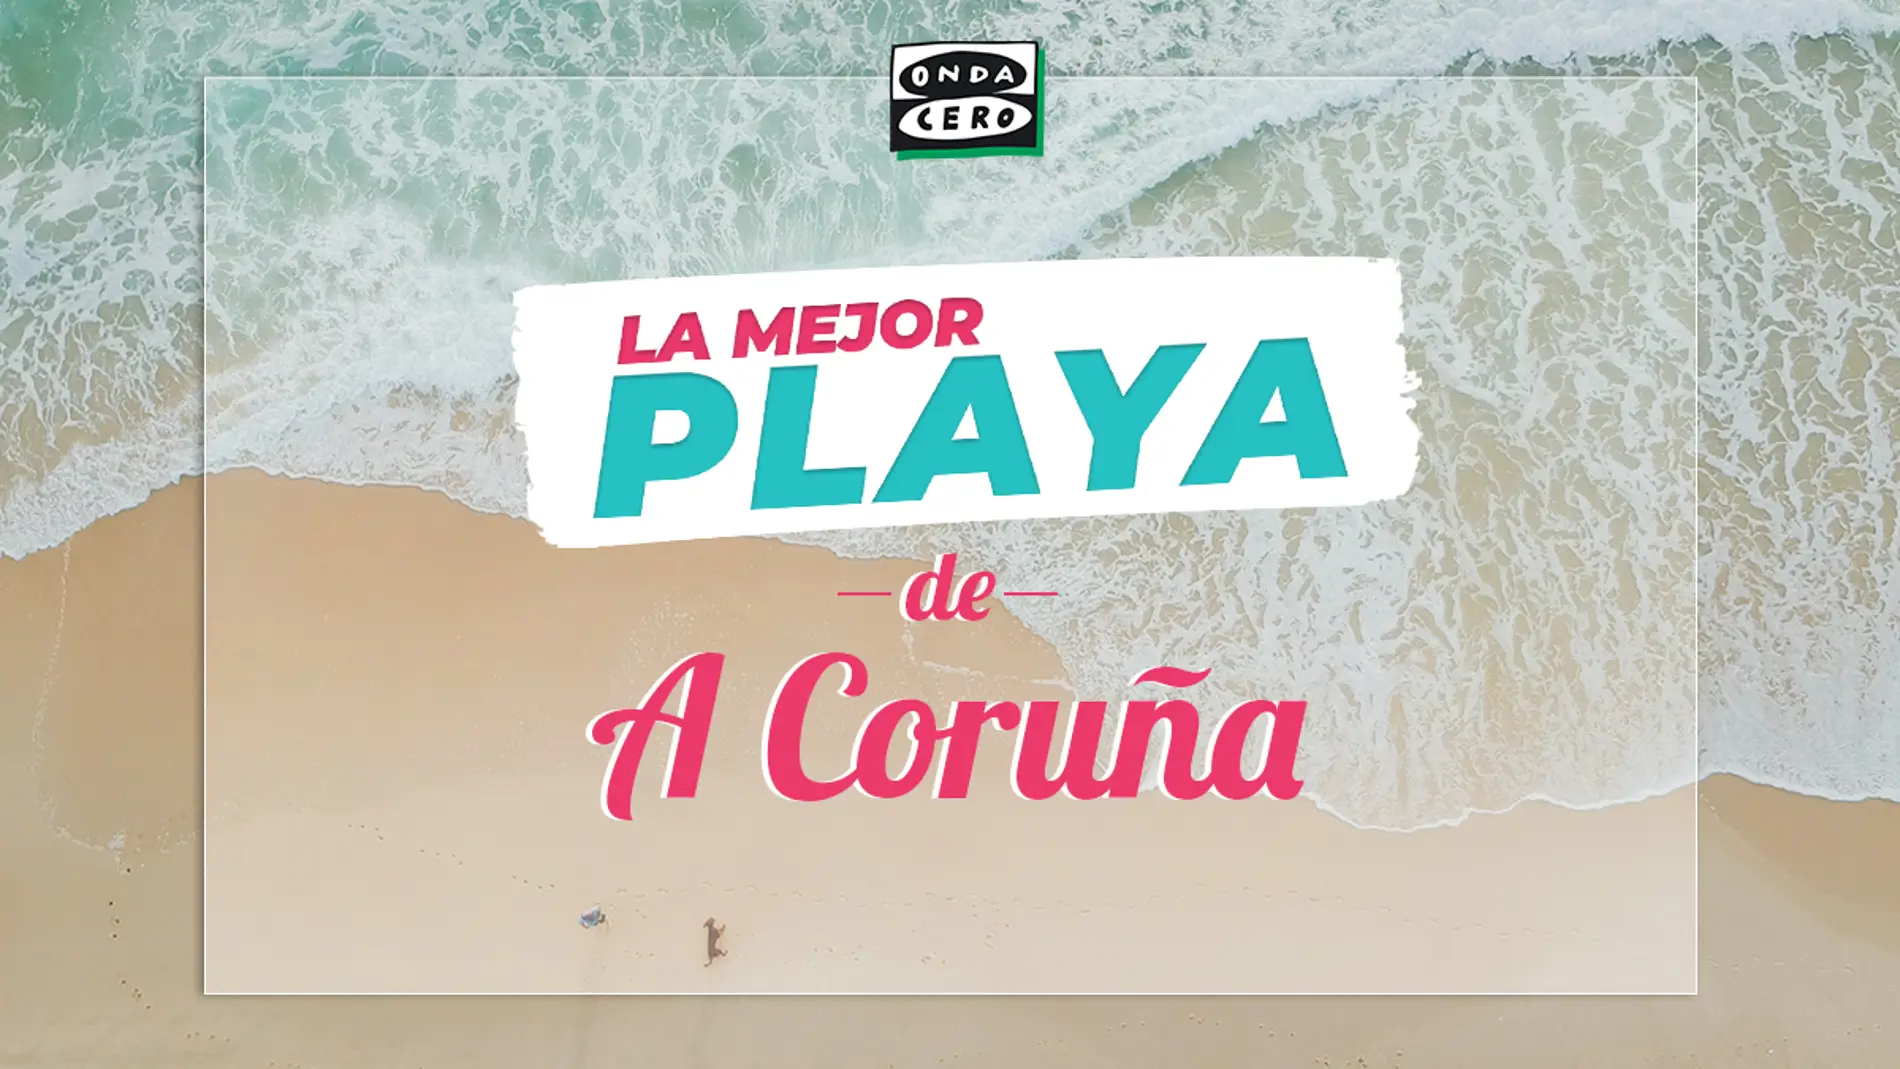 La mejor playa de A Coruña